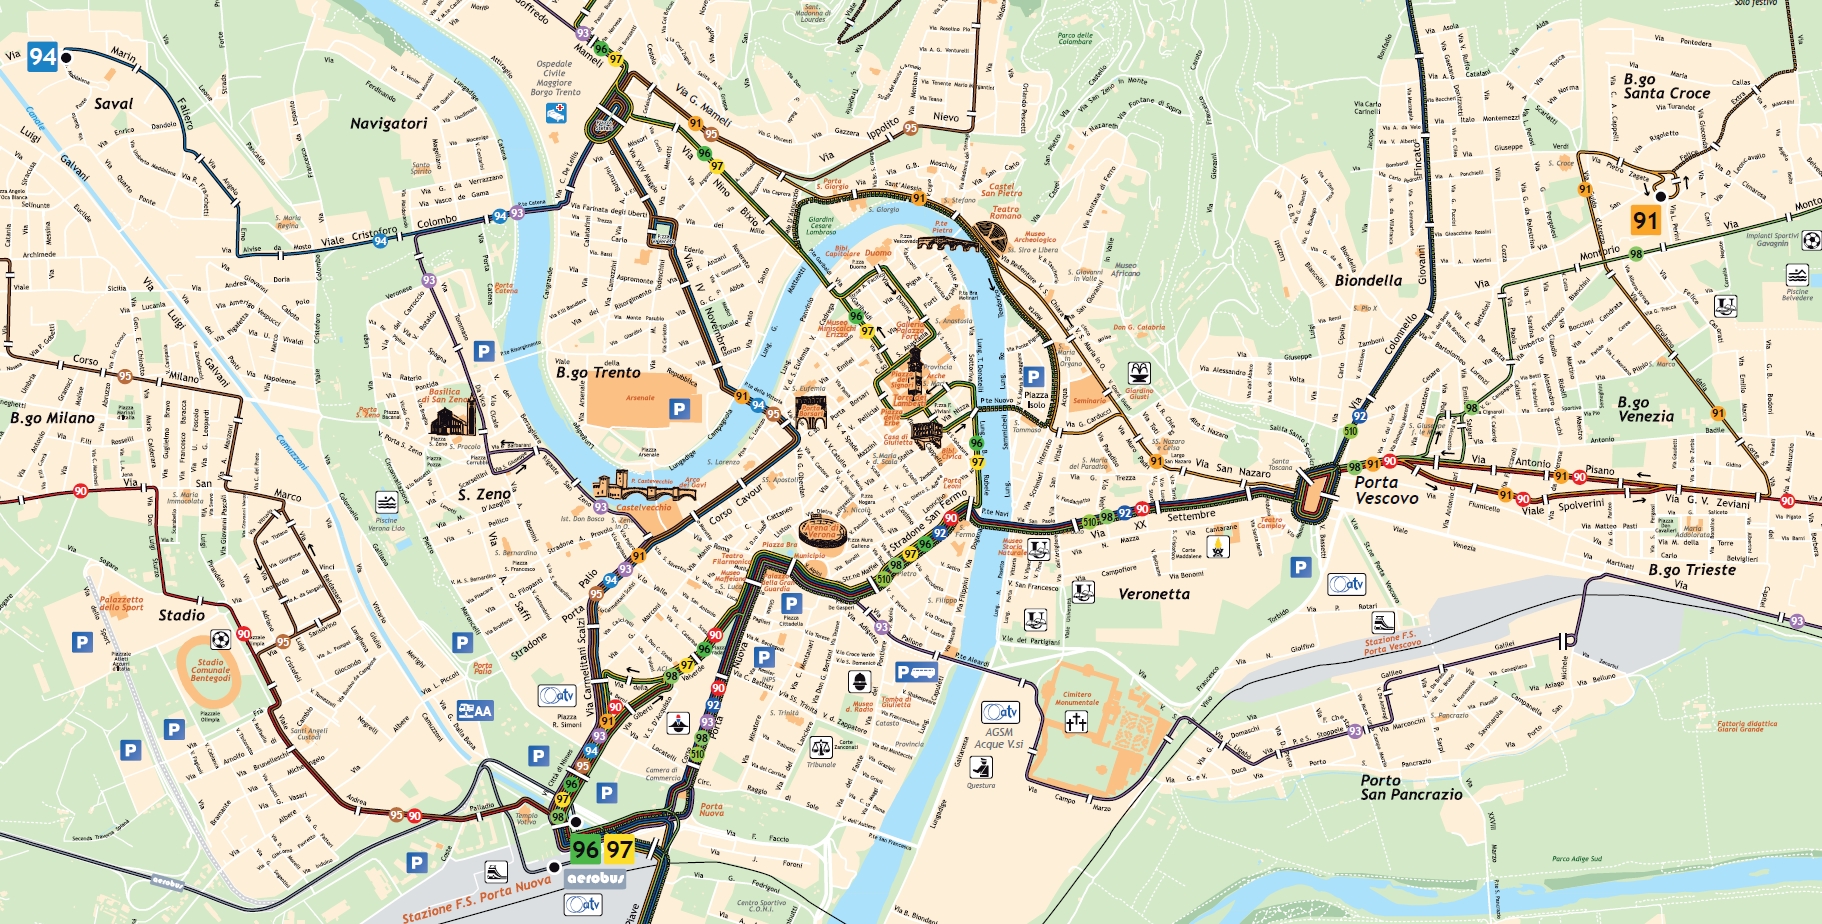 Верона_схема вечерних автобусных маршрутов в центре города